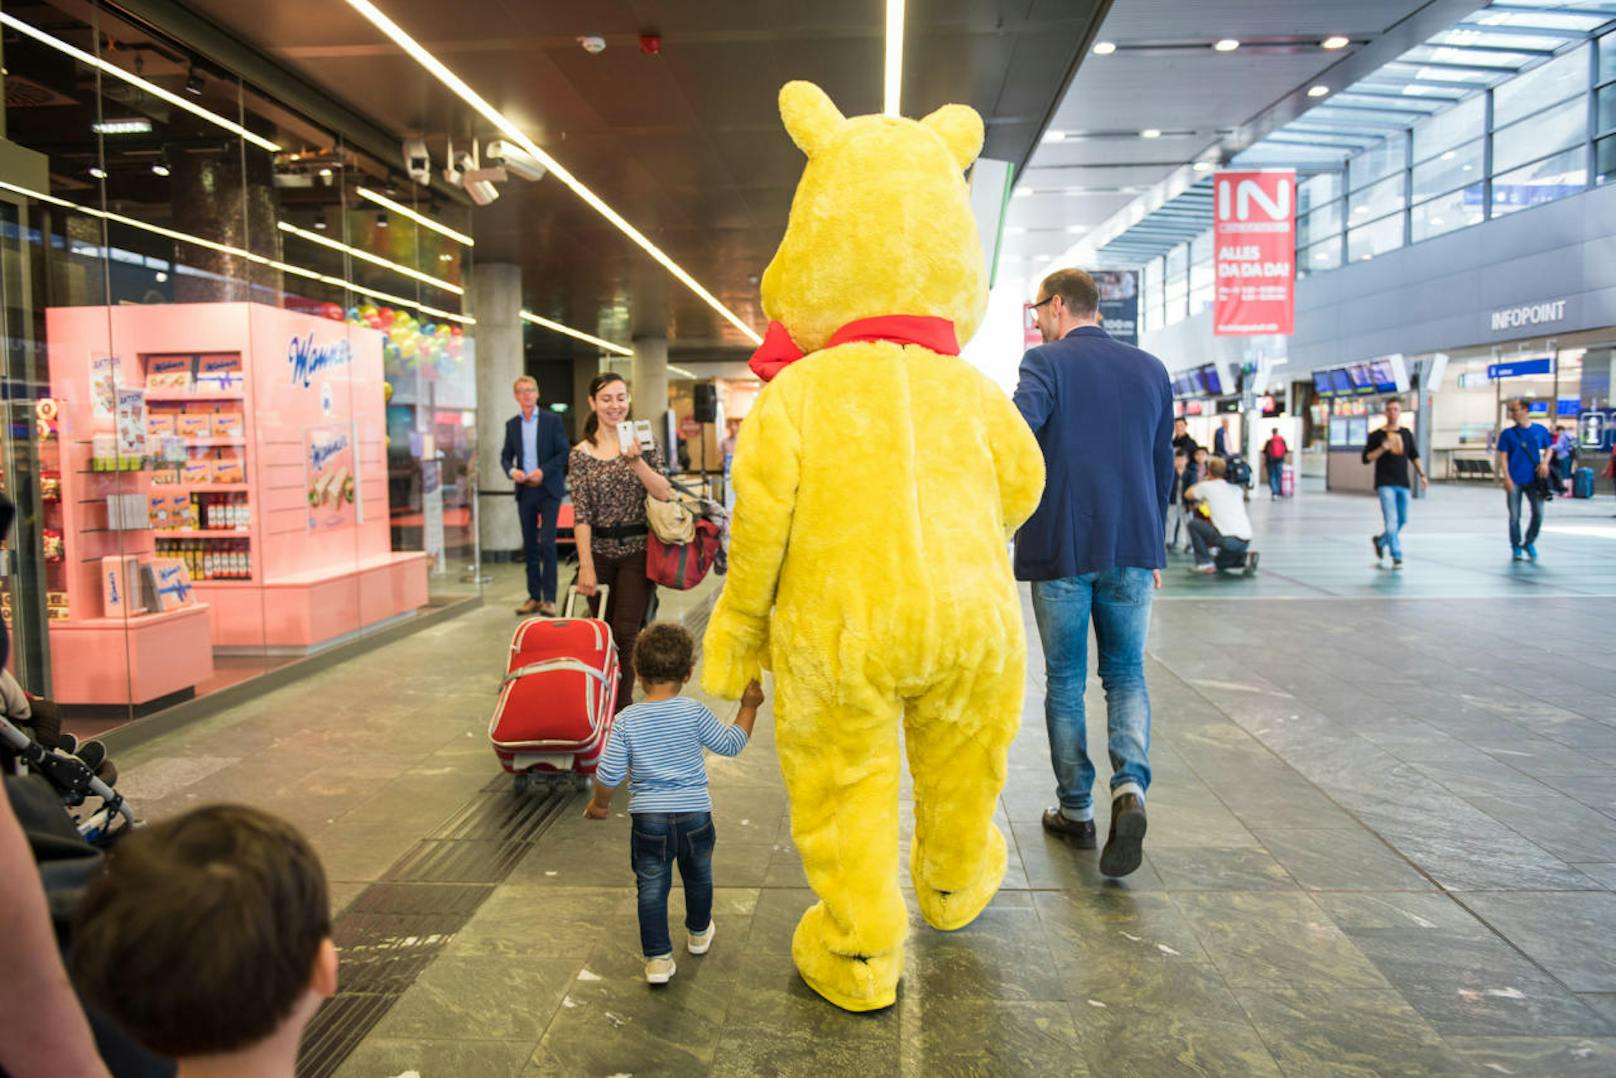 Am Freitag findet das Welttreffen der Maskottchen in der BahnhofCity Wien Hauptbahnhof statt. Benjamin Blümchen, Biene Maja, Wickie, Super Mario sind dabei!